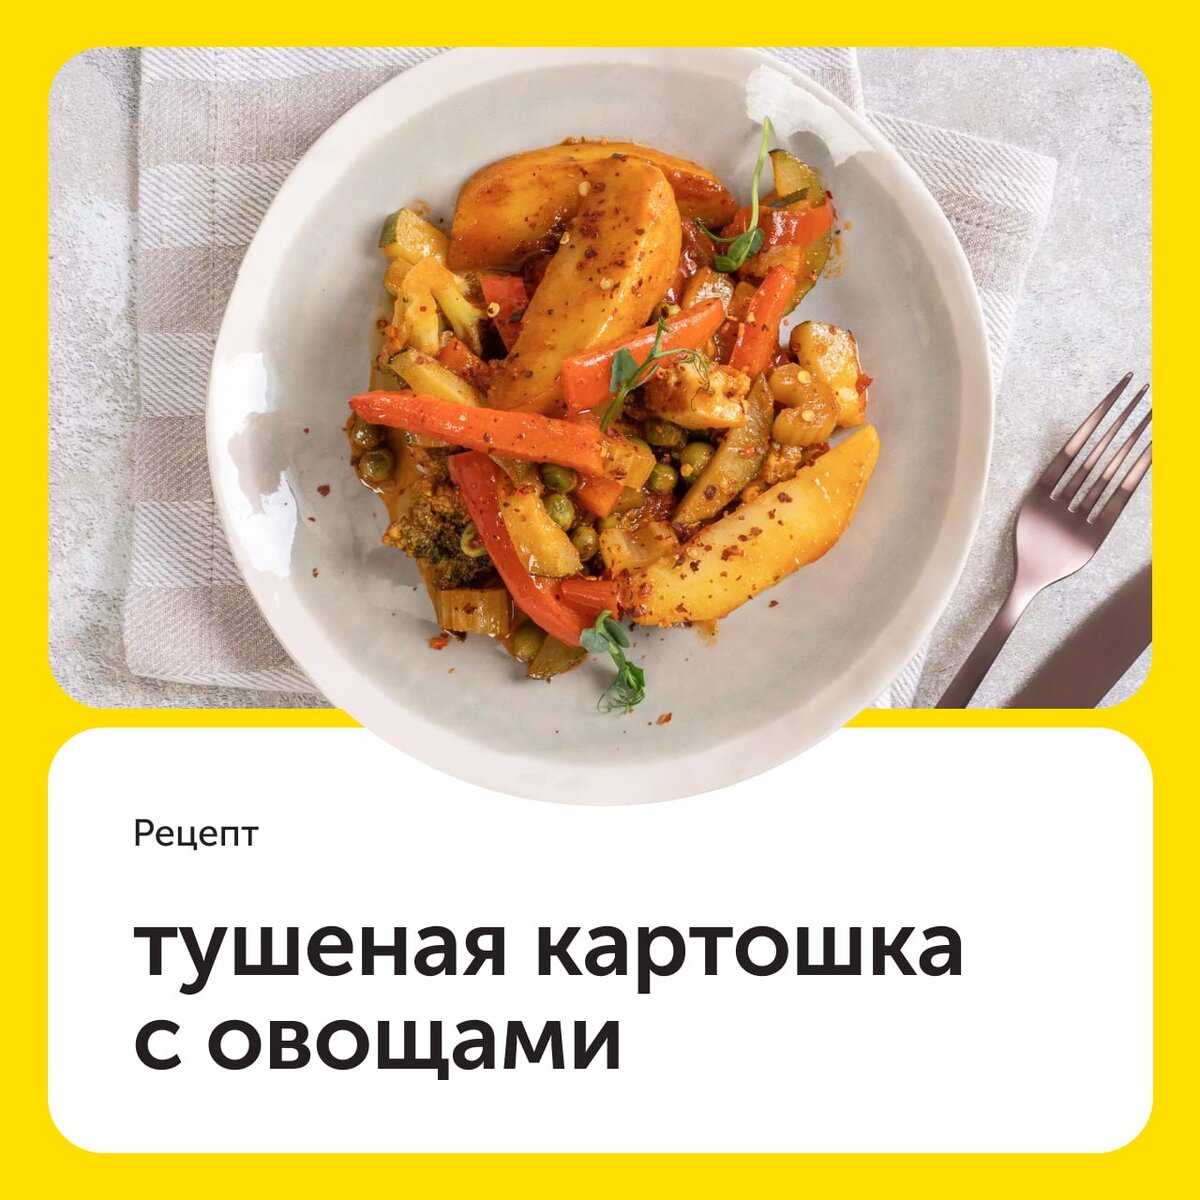 Кабачки тушеные с овощами - рецепт автора natashka